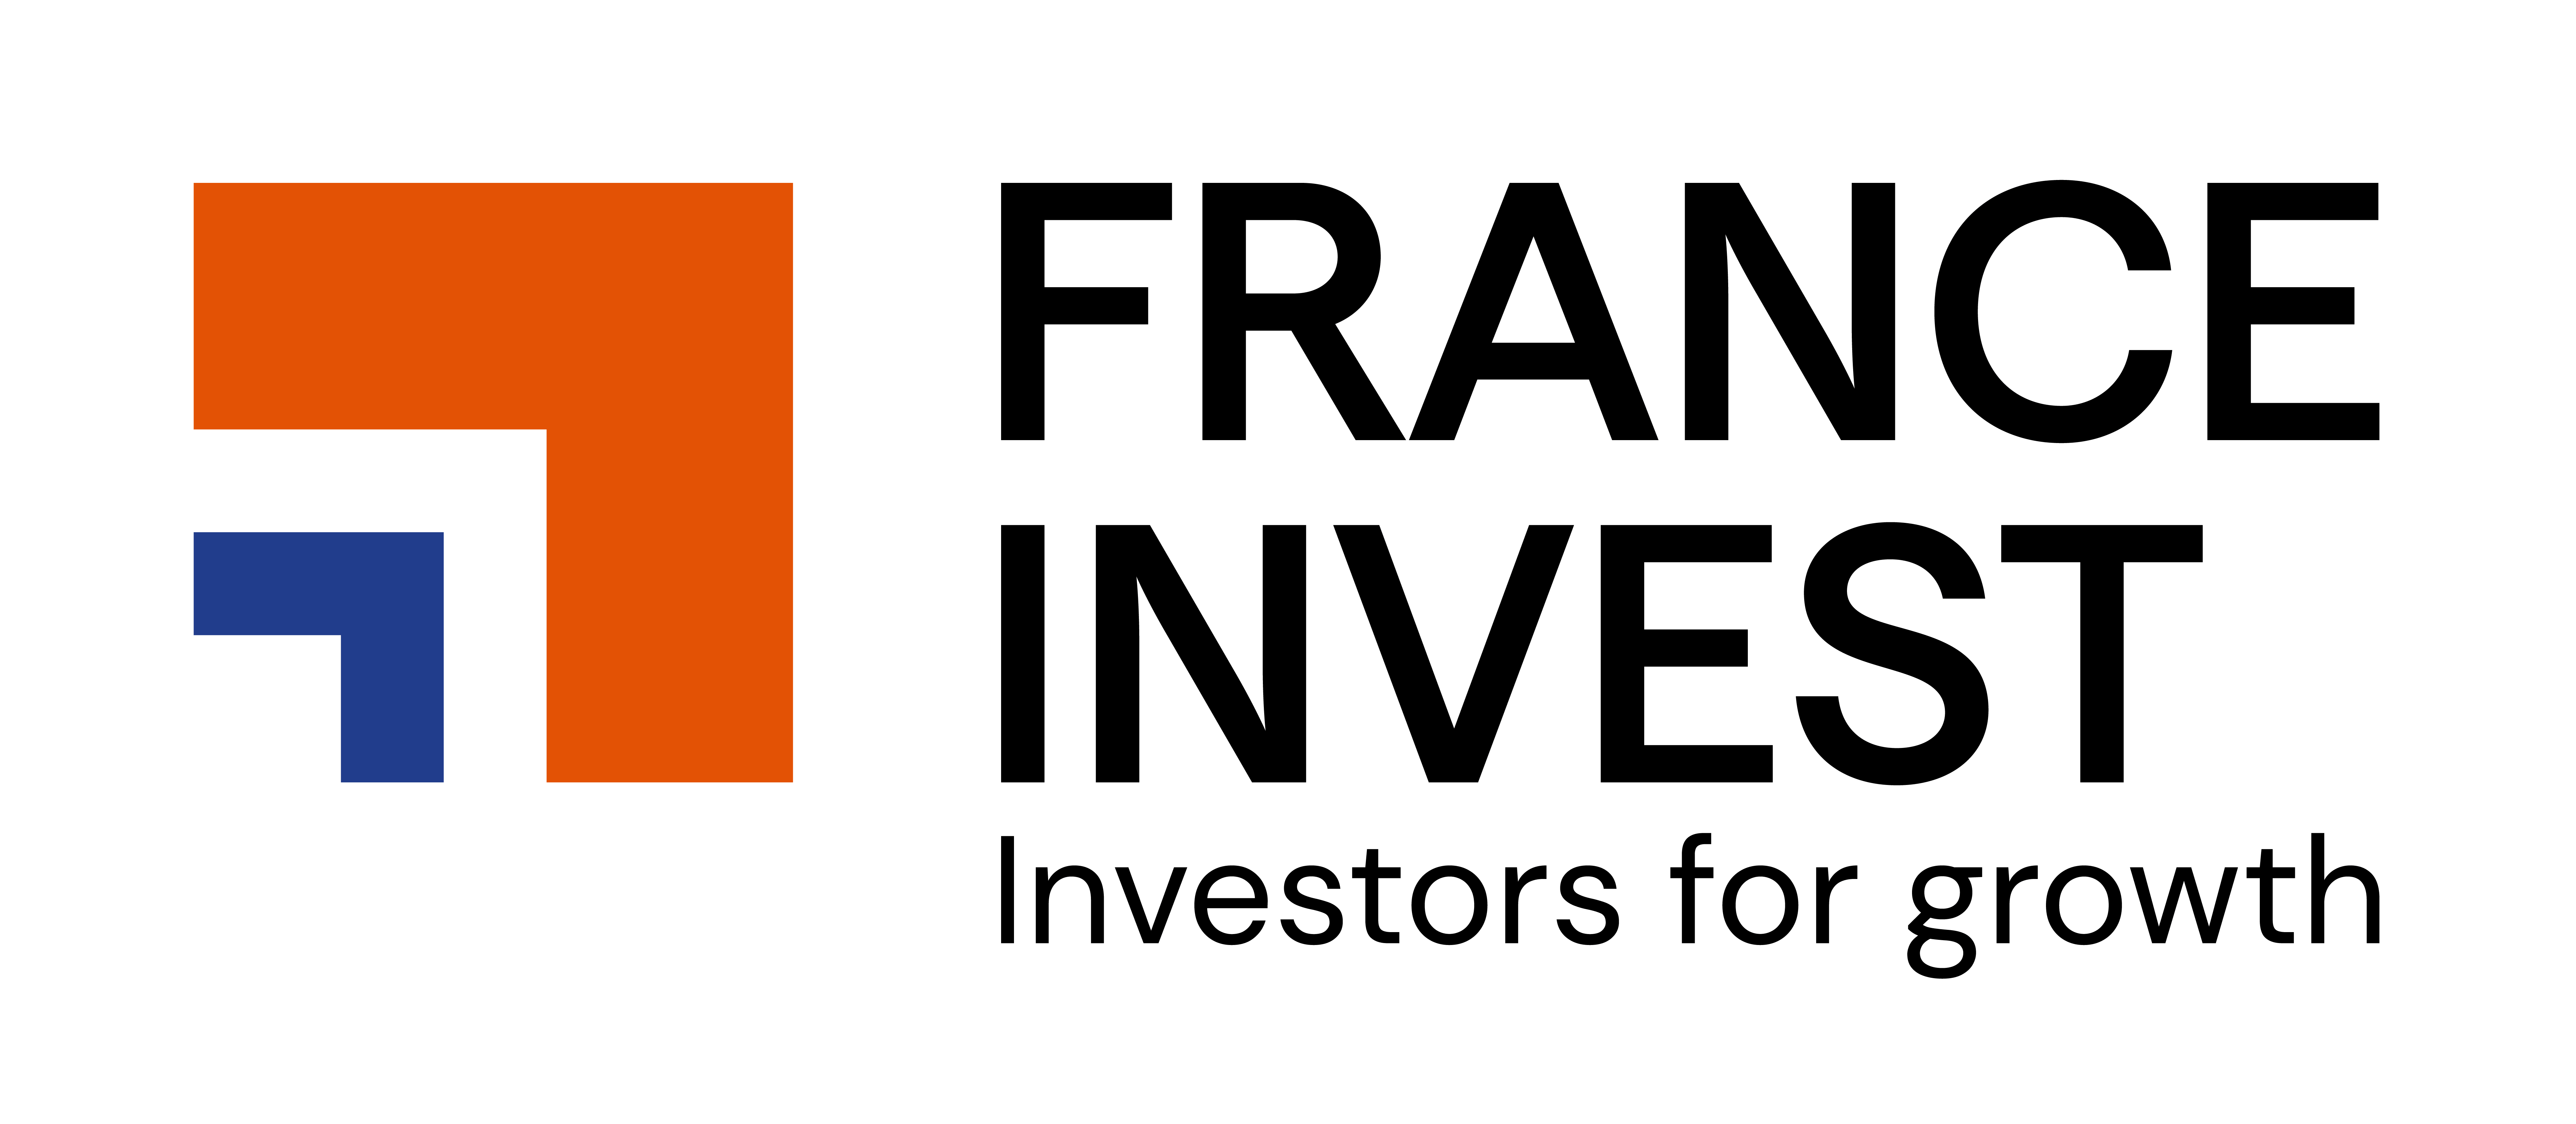 France Invest - Association des investisseurs pour la croissance